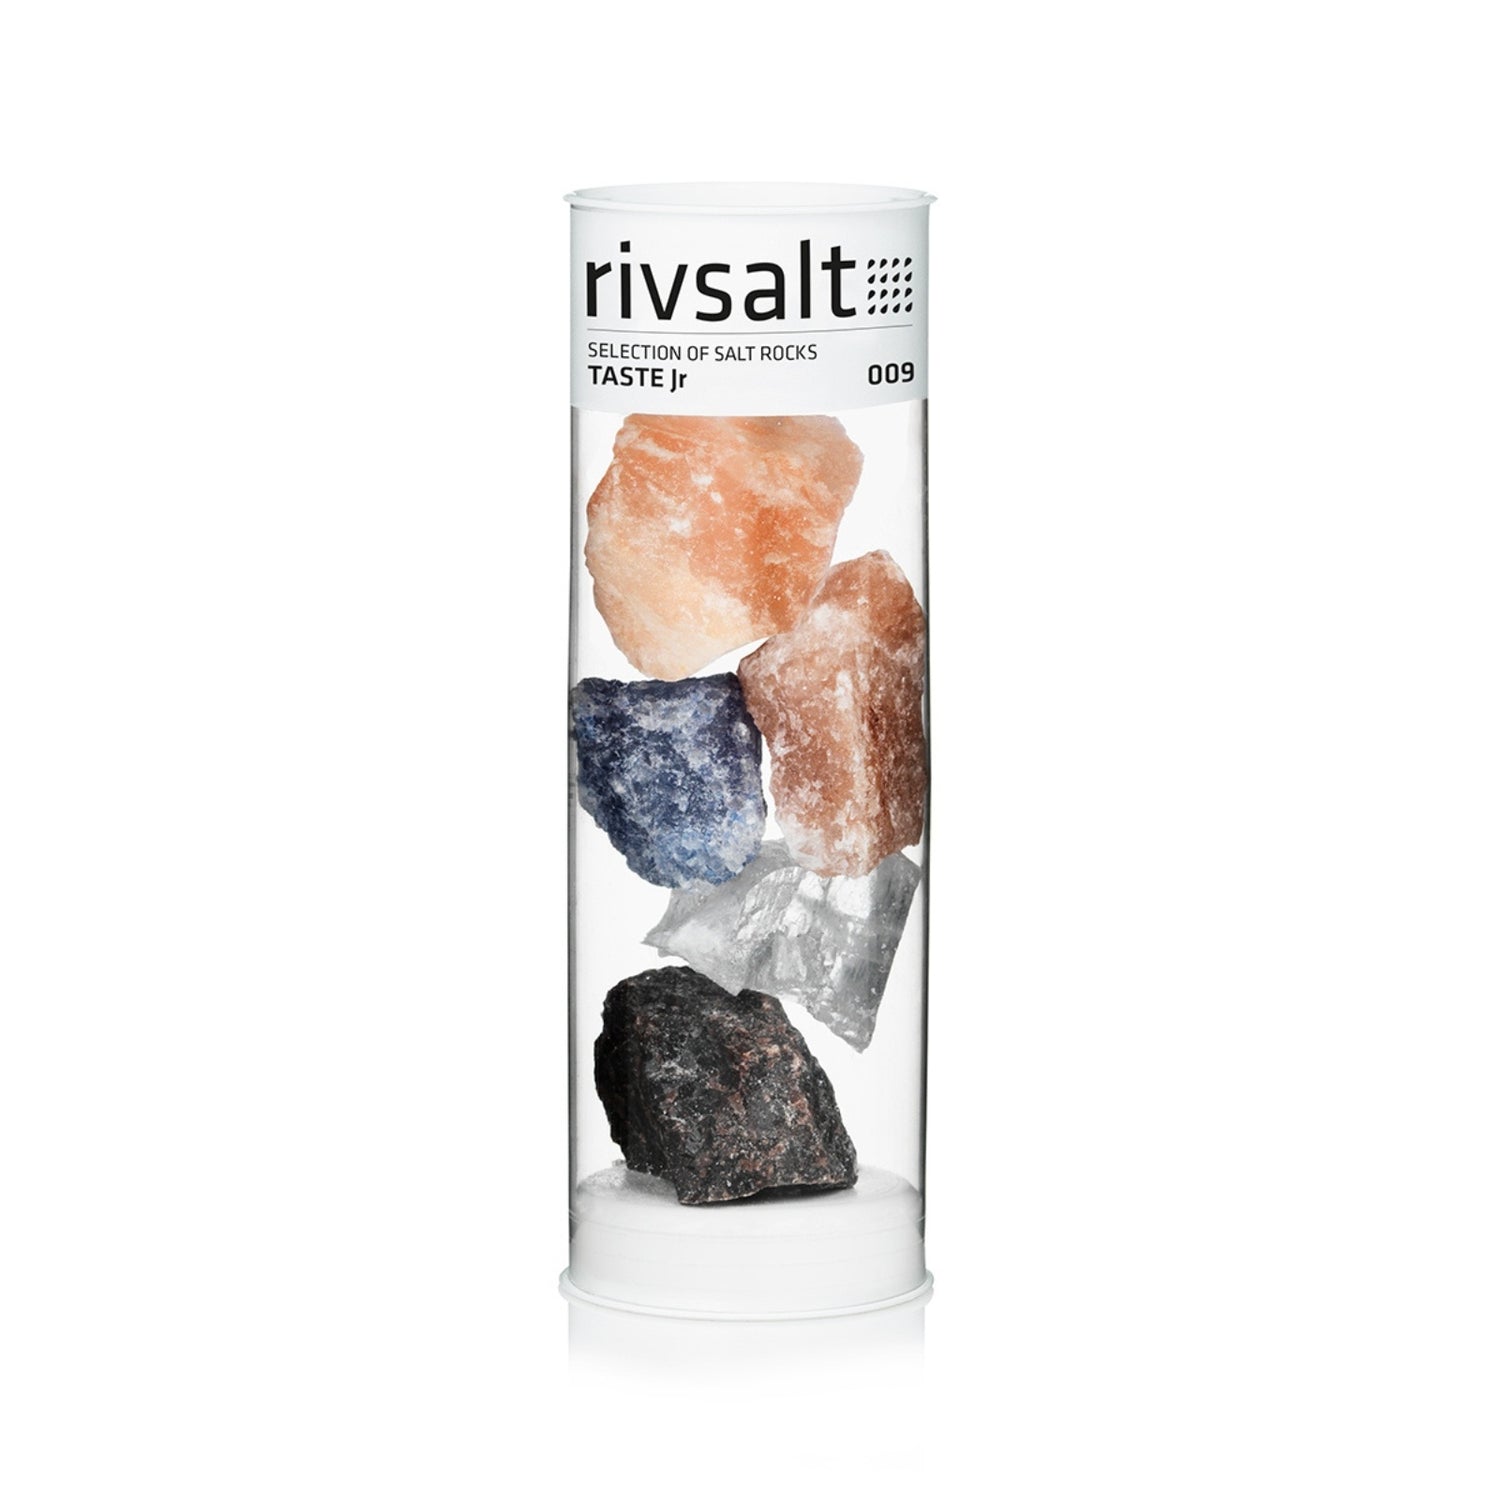 Rivsalt - Taste Jr #009